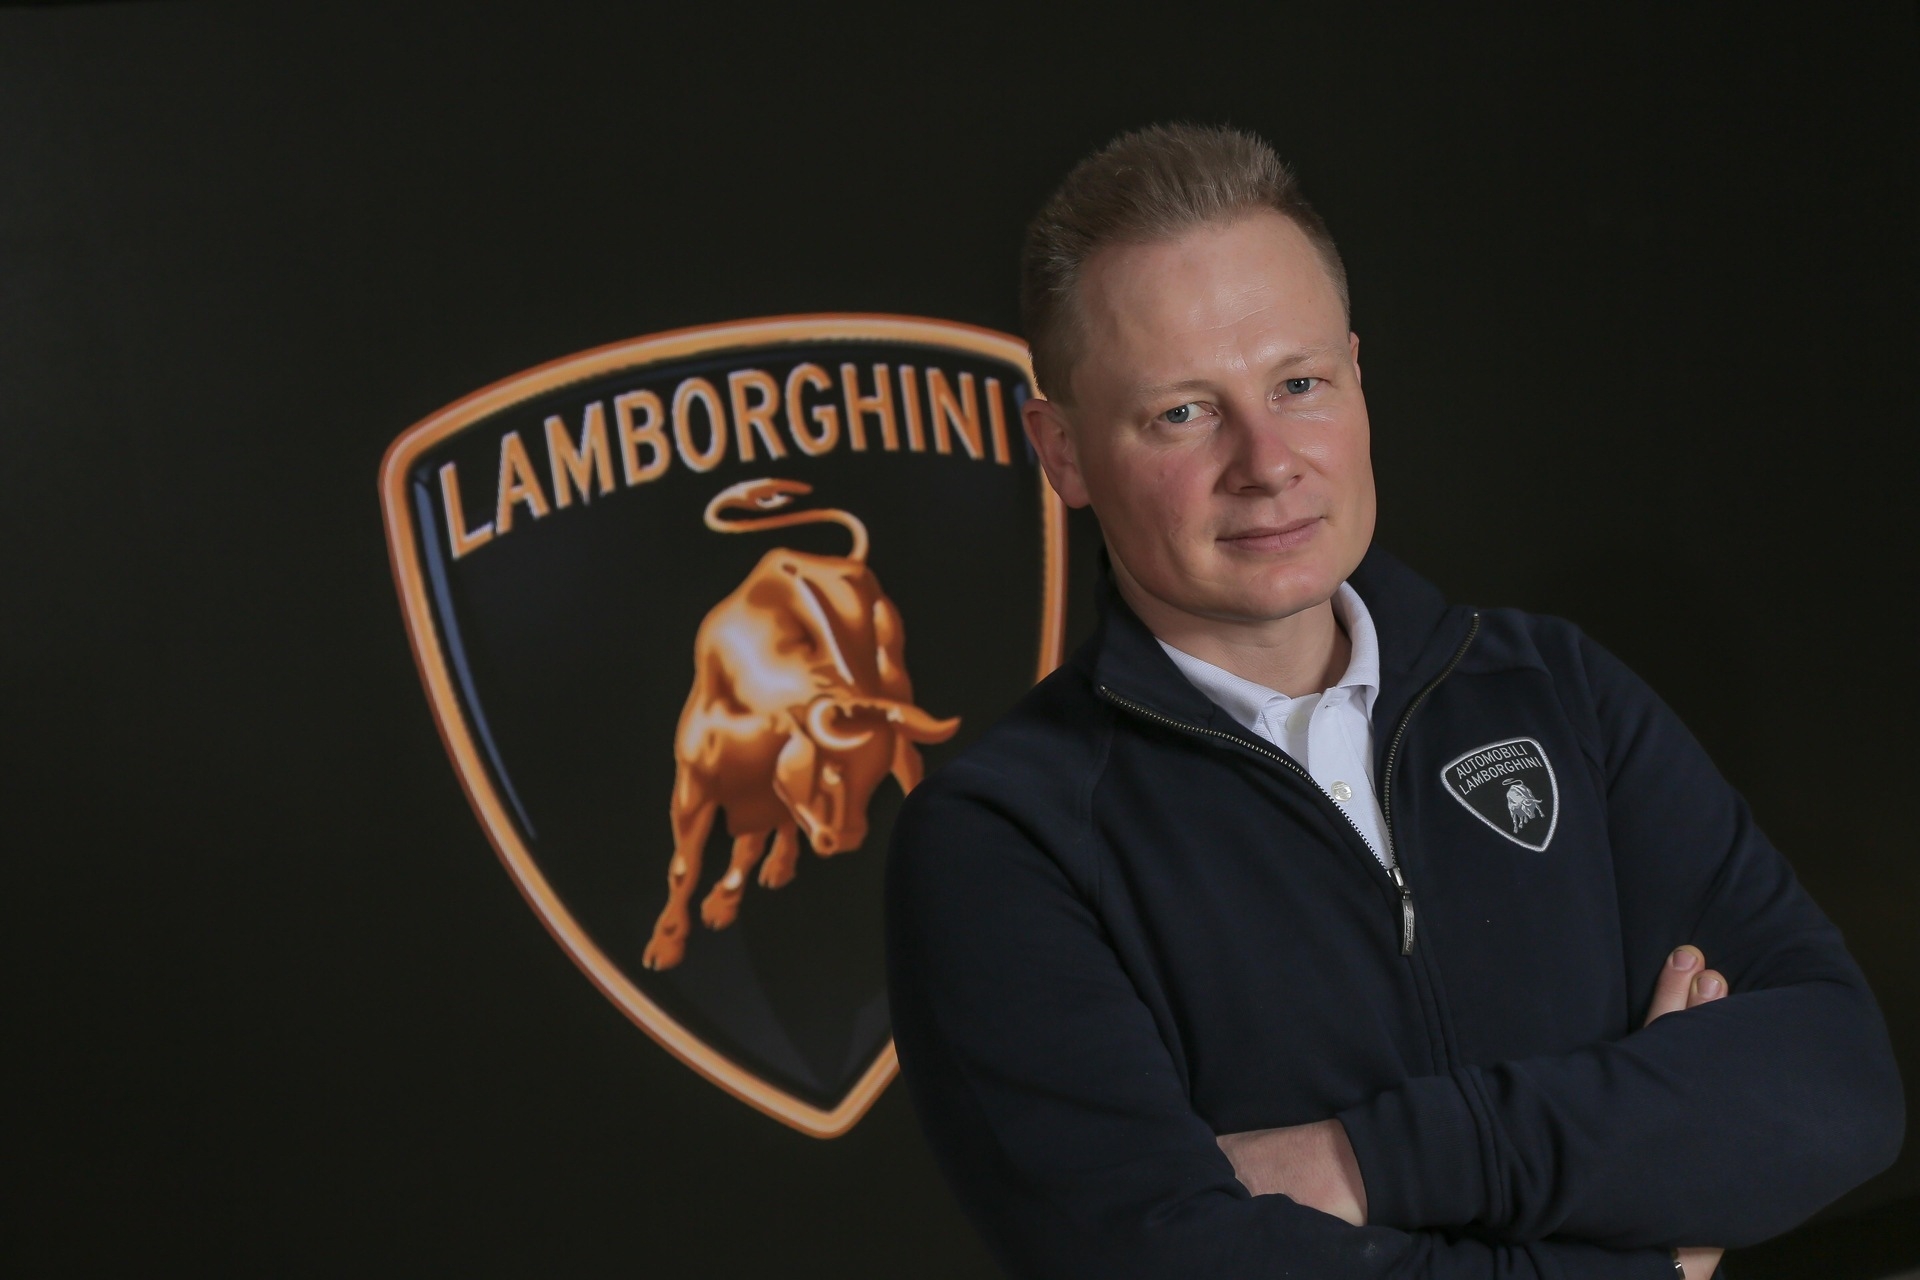 Lanzador: Mitja Borkert je direktor dizajna u Automobili Lamborghini